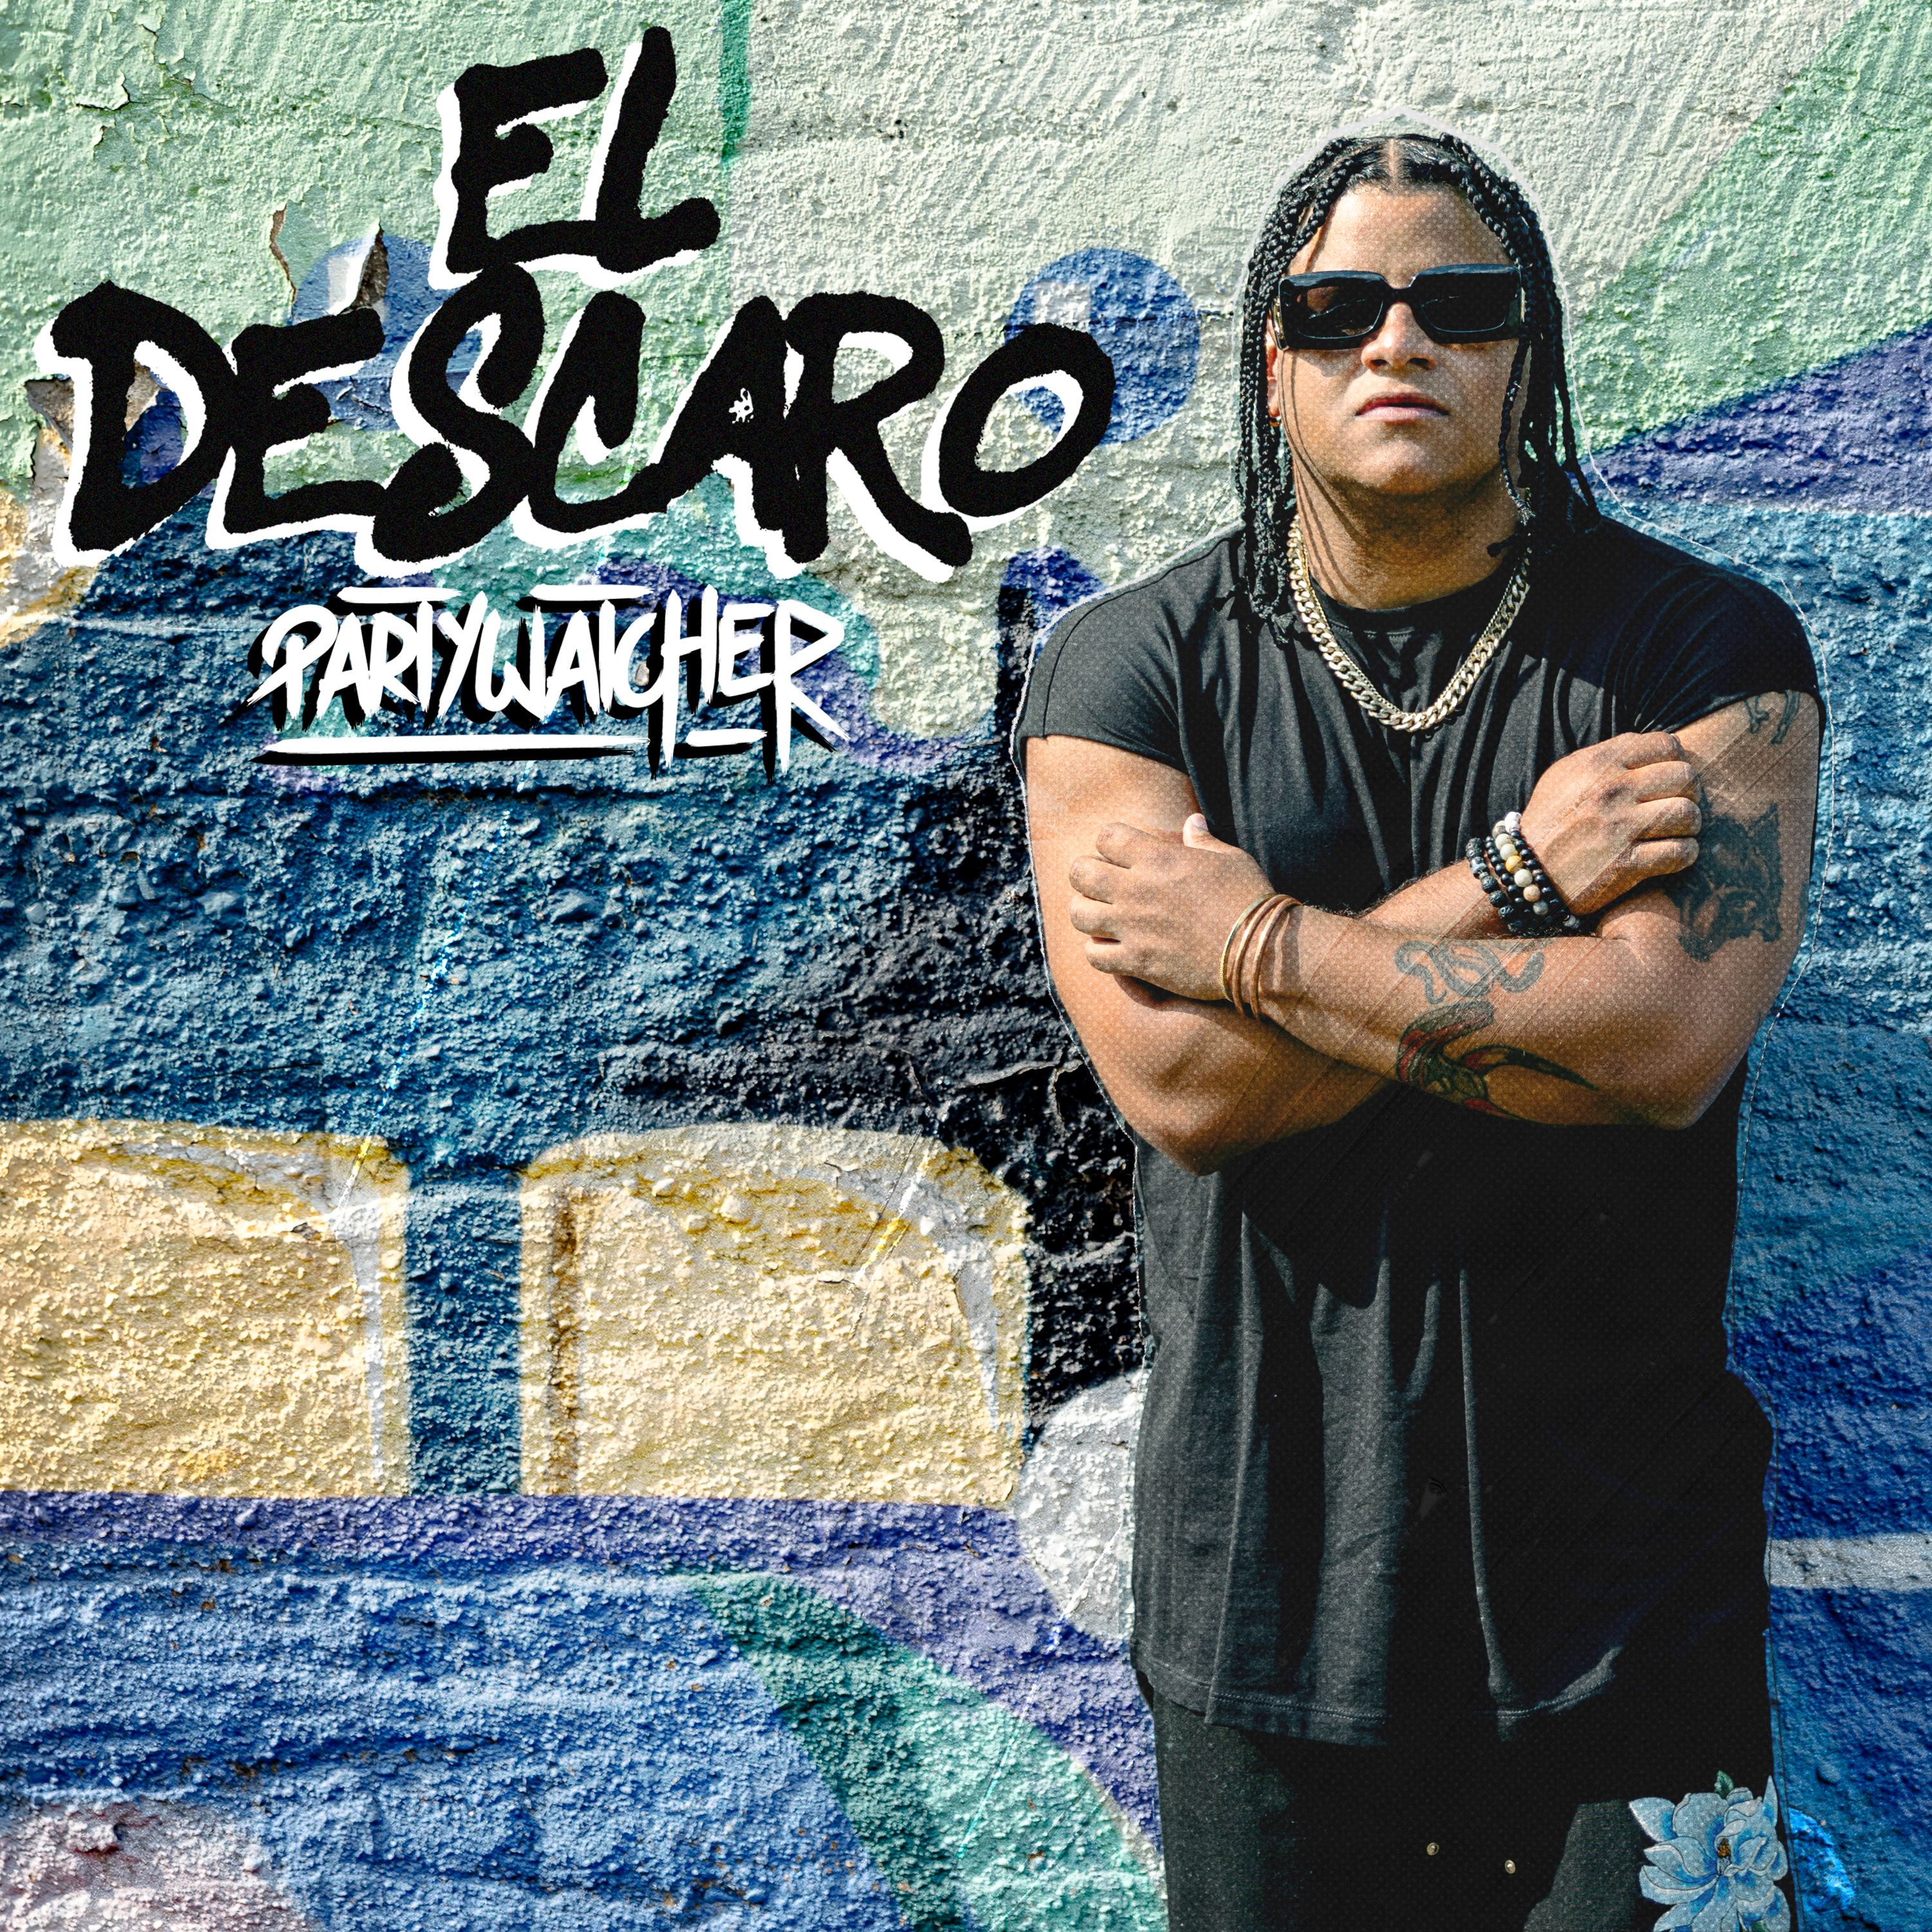 partywatcher realiza un emotivo viaje a sus raíces dominicanas con su nuevo sencillo “El Descaro”